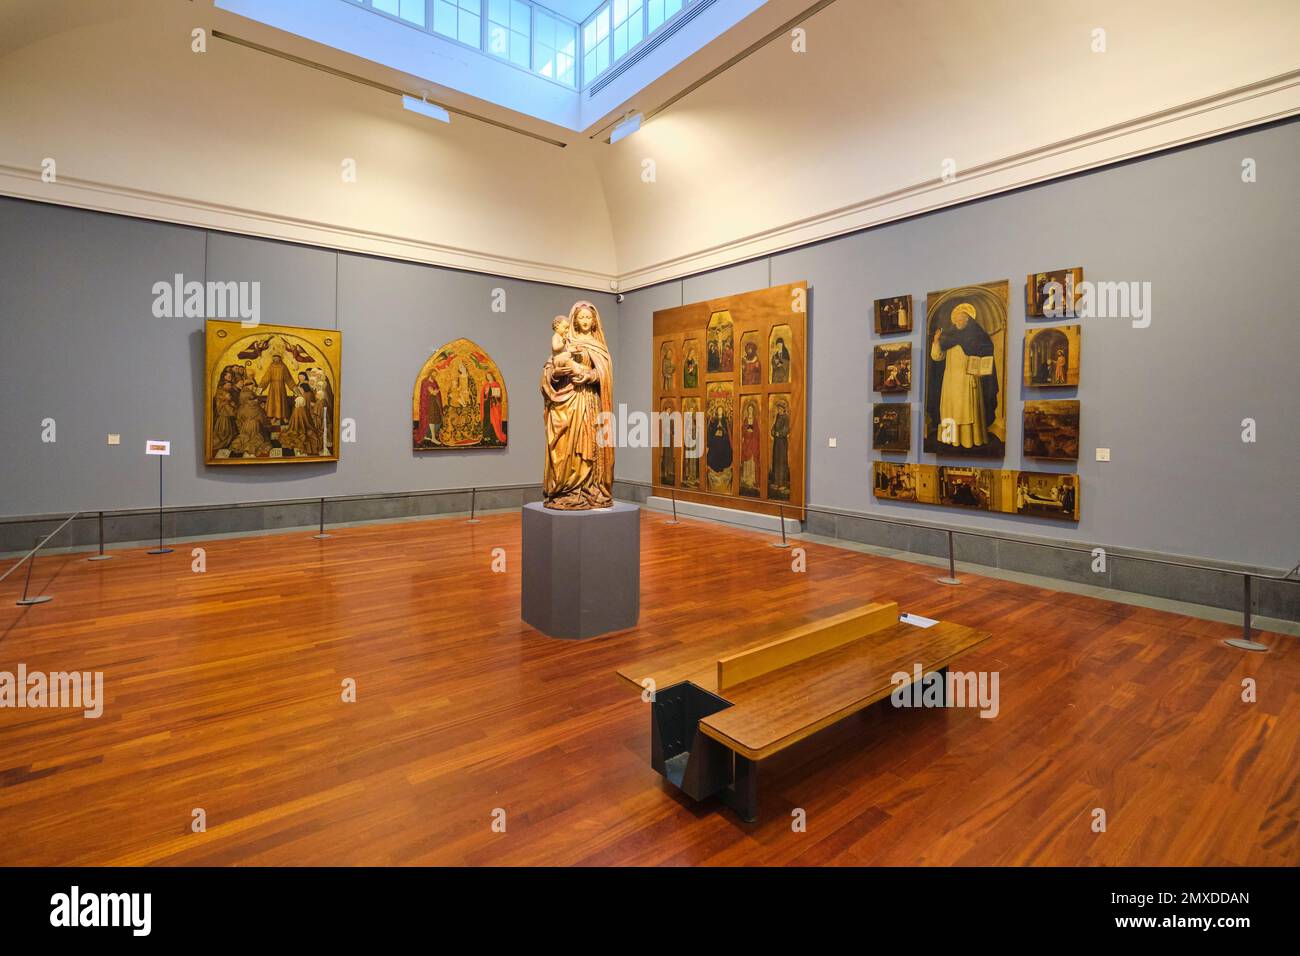 Eine Galerie mit verschiedenen mittelalterlichen, religiösen, Ikonen, Relikten und Altar-Stücken. Im Kunstmuseum, Museo e Real Bosco di Capodimonte, in Neapel, Ita Stockfoto